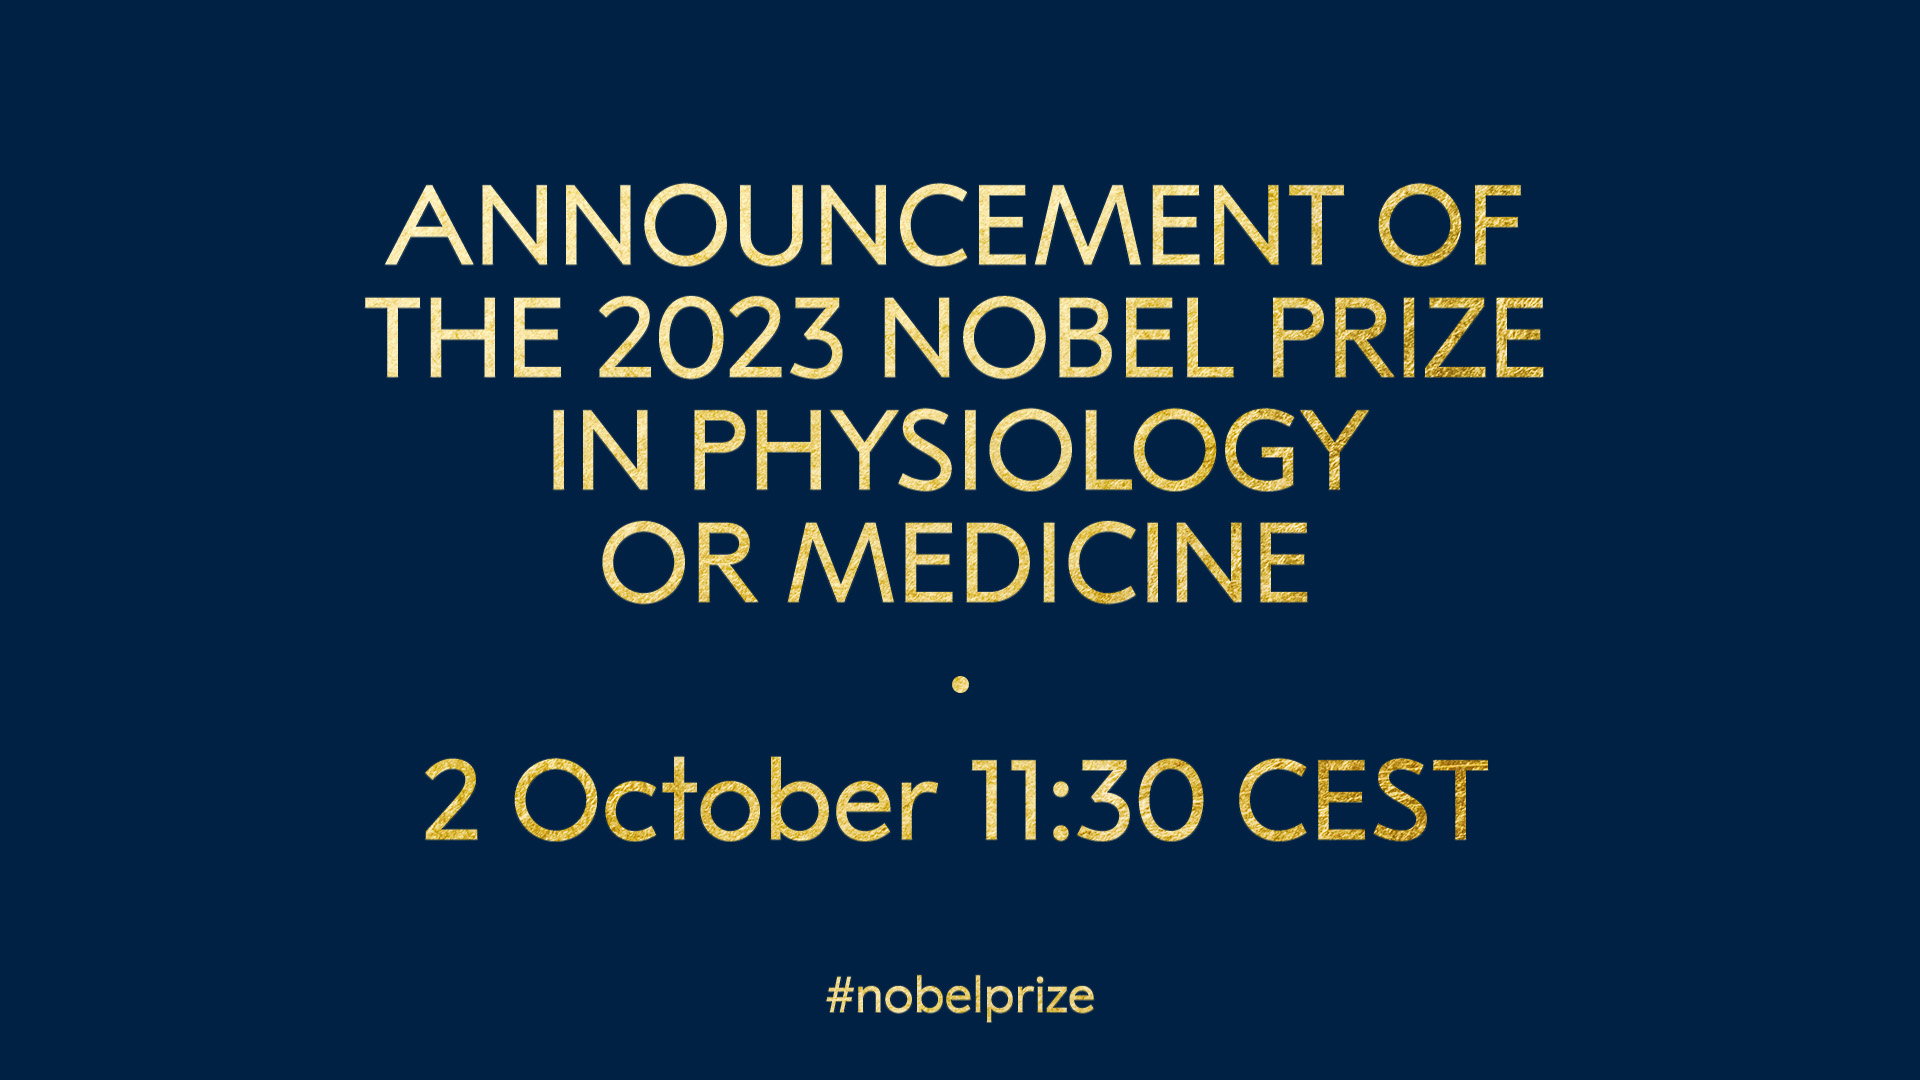 جائزة نوبل لـ علم وظائف الأعضاء أو الطب 2023